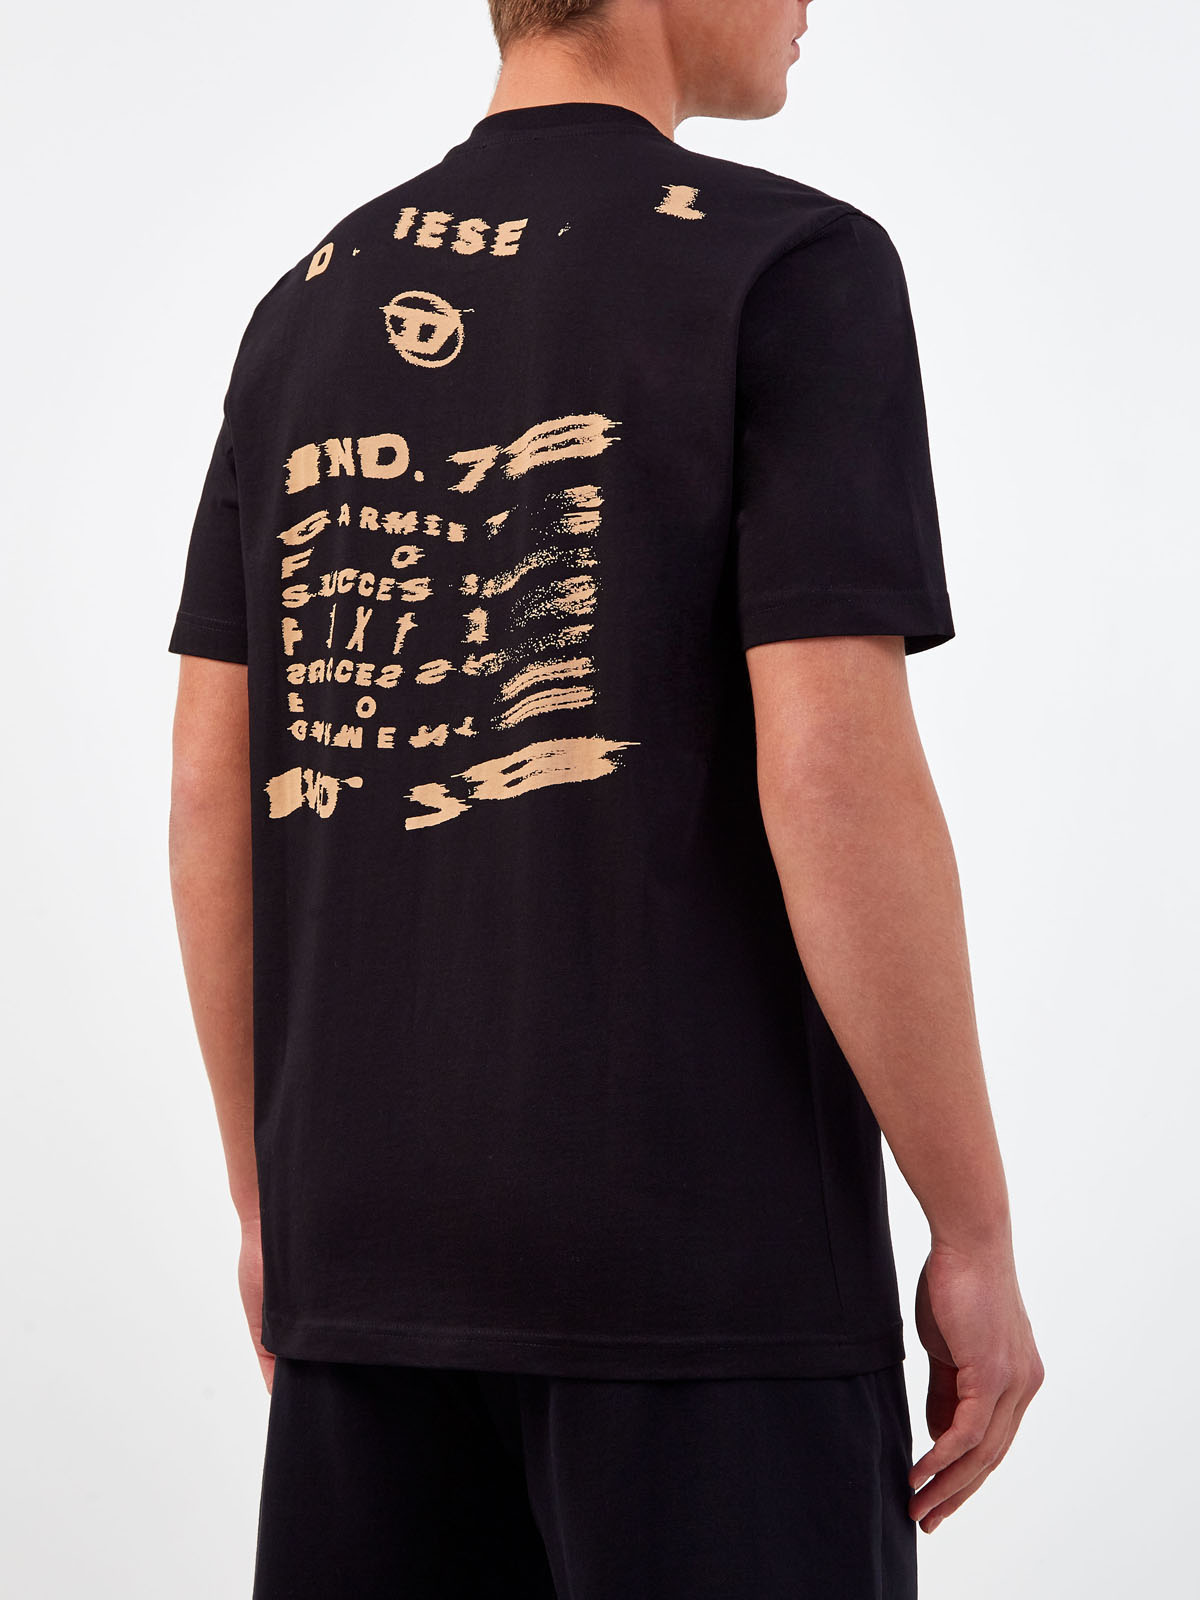 Хлопковая футболка свободного кроя с принтом DIESEL, цвет черный, размер S;XL;2XL;M - фото 4